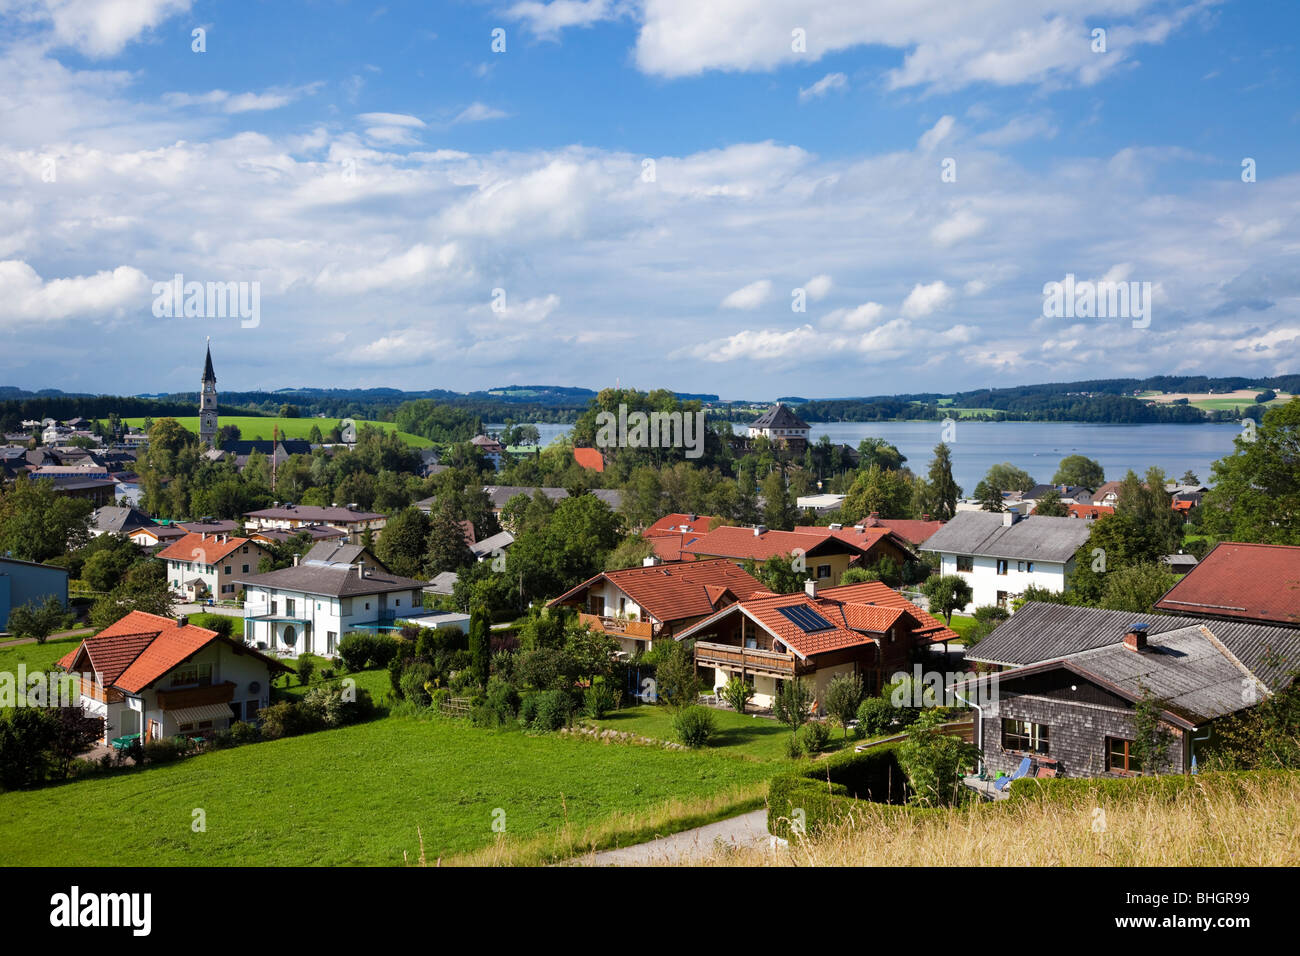 Austria : Città di Mattsee e Lago di Mattsee nel distretto dei laghi austriaci, Austria, Europa Foto Stock